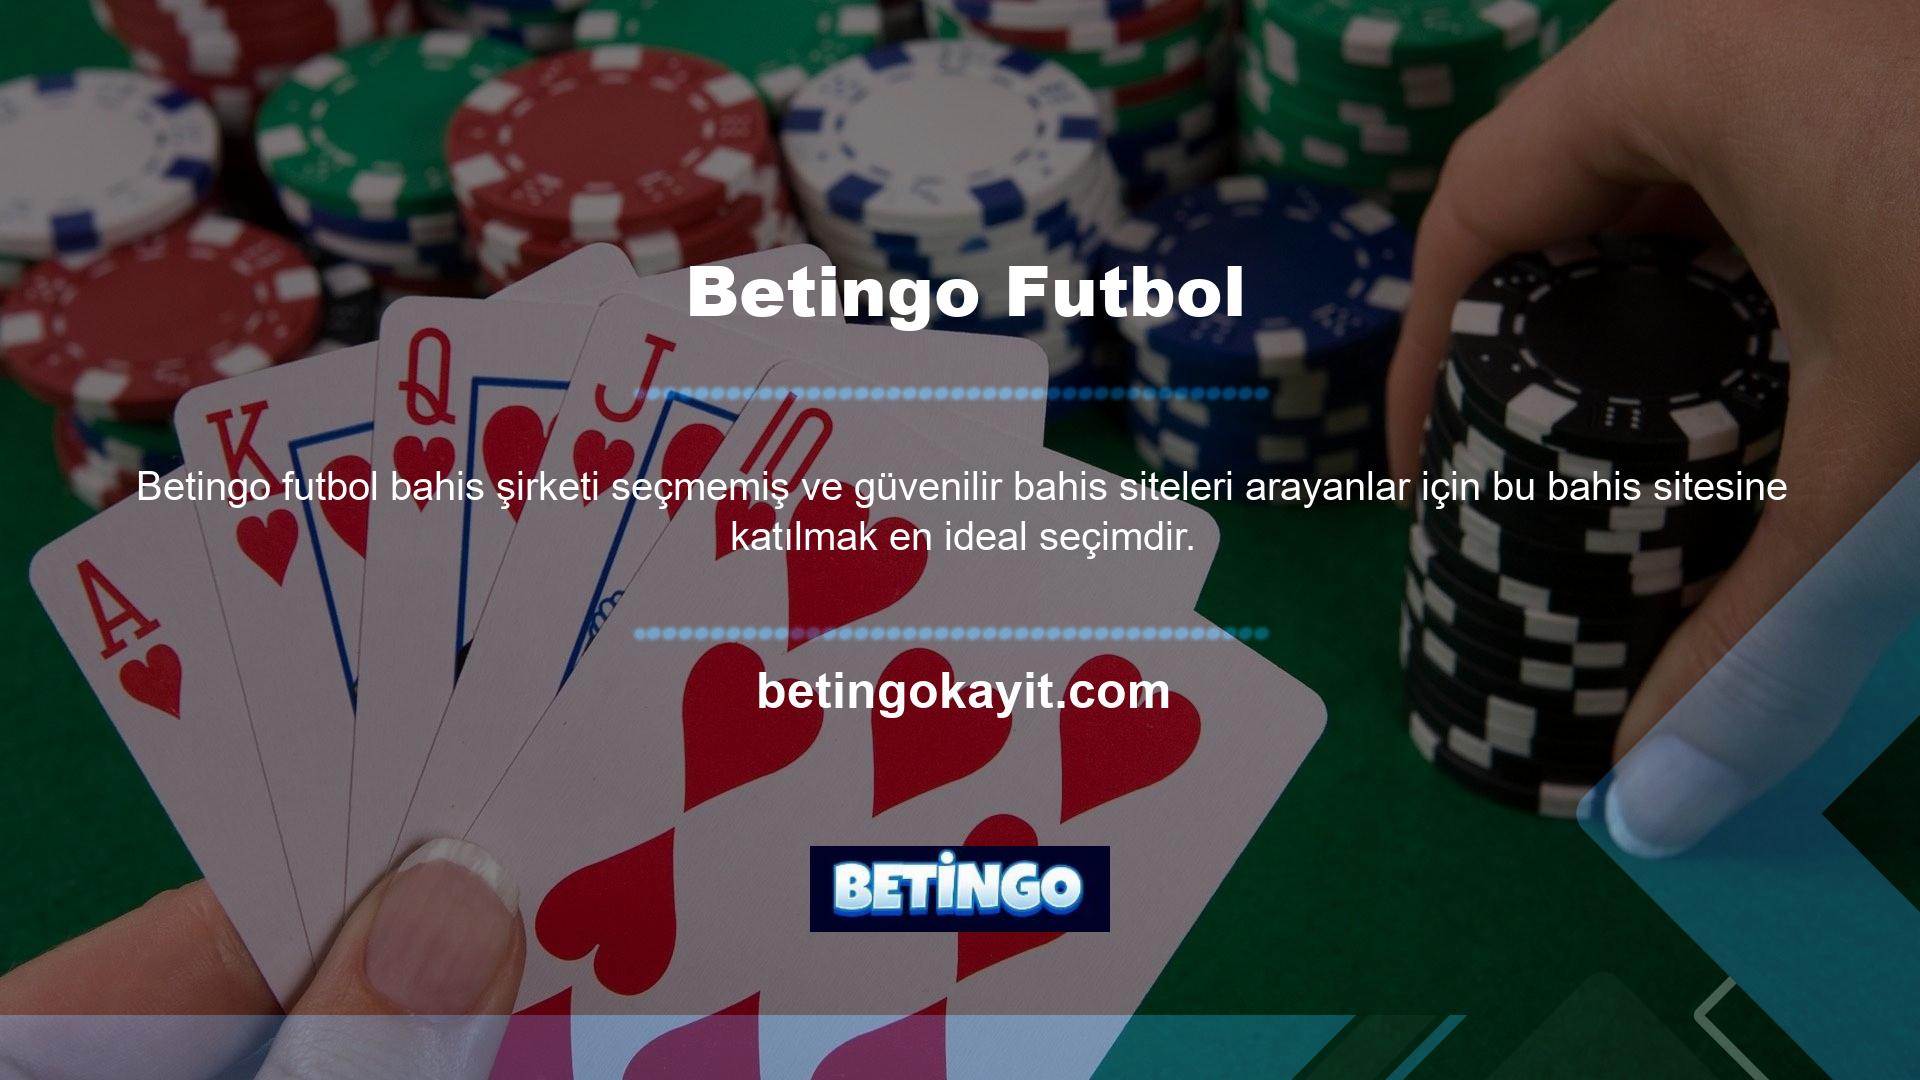 Betingo, casino oyunlarını sevenler için faydalı olmasının yanı sıra, güvenli oyun için bilgi ve yönergeler de sağlar